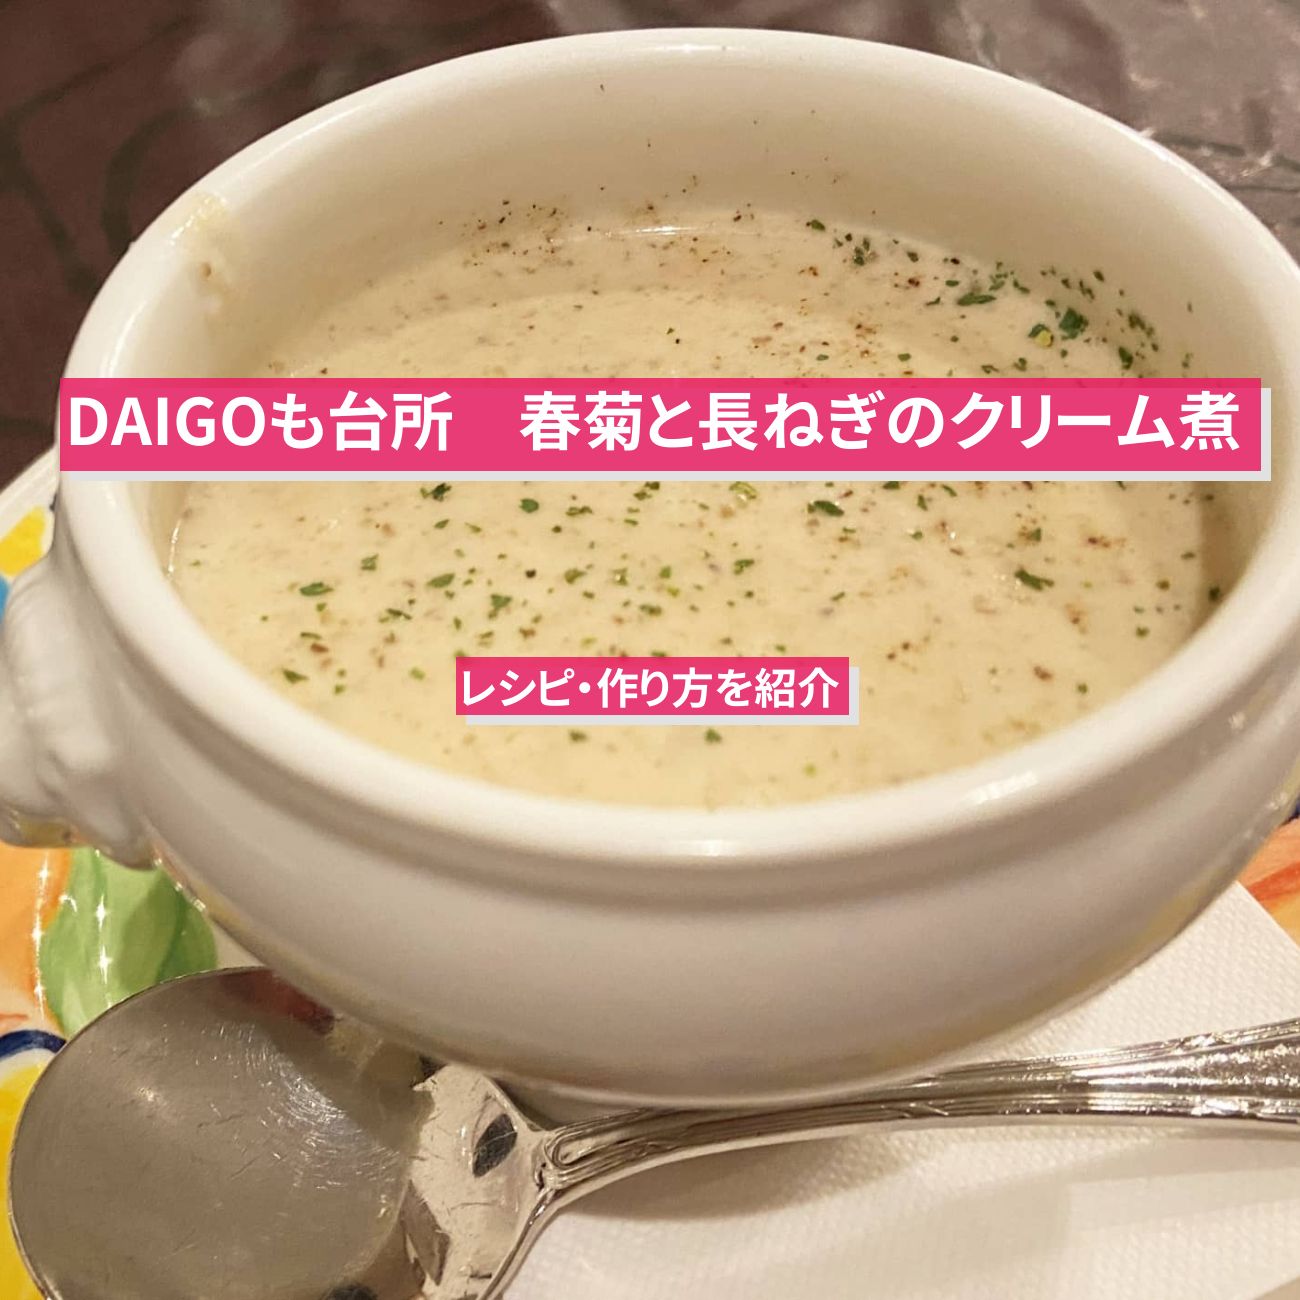 【DAIGOも台所】『春菊と長ねぎのクリーム煮』のレシピ・作り方を紹介